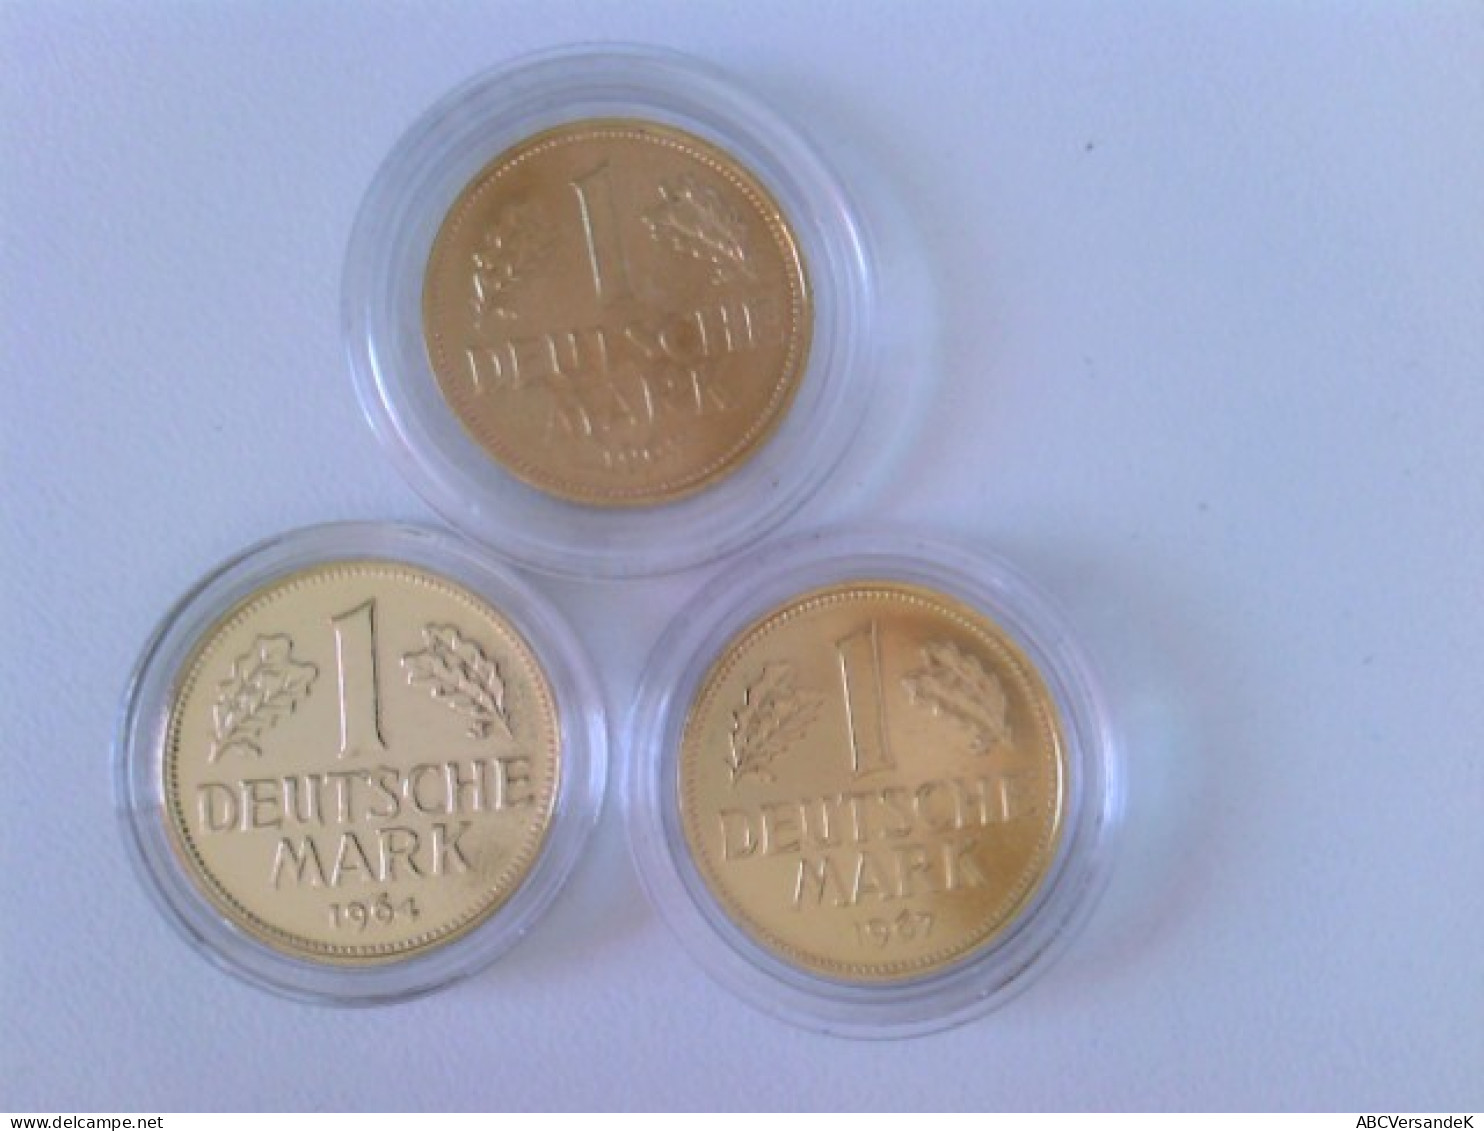 Münzen/ Medaillen: Hier 2 X 1 DM 1950 + 1955, Deutsche Mark Mit 24 Karat Goldauflage, In Kapsel. - Numismatik